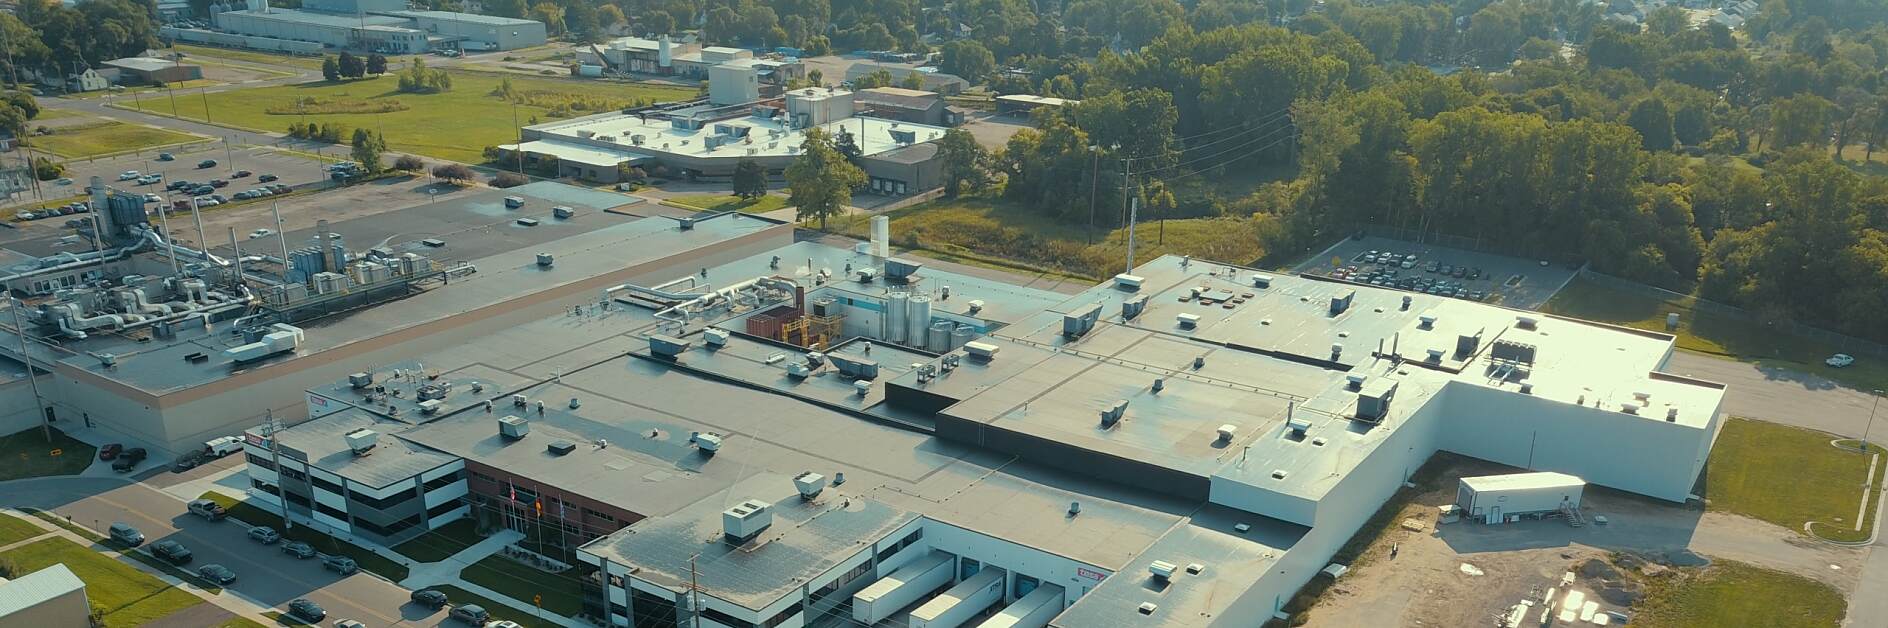 Bendrovės tesa gamykla Spartoje, Mičigane, JAV